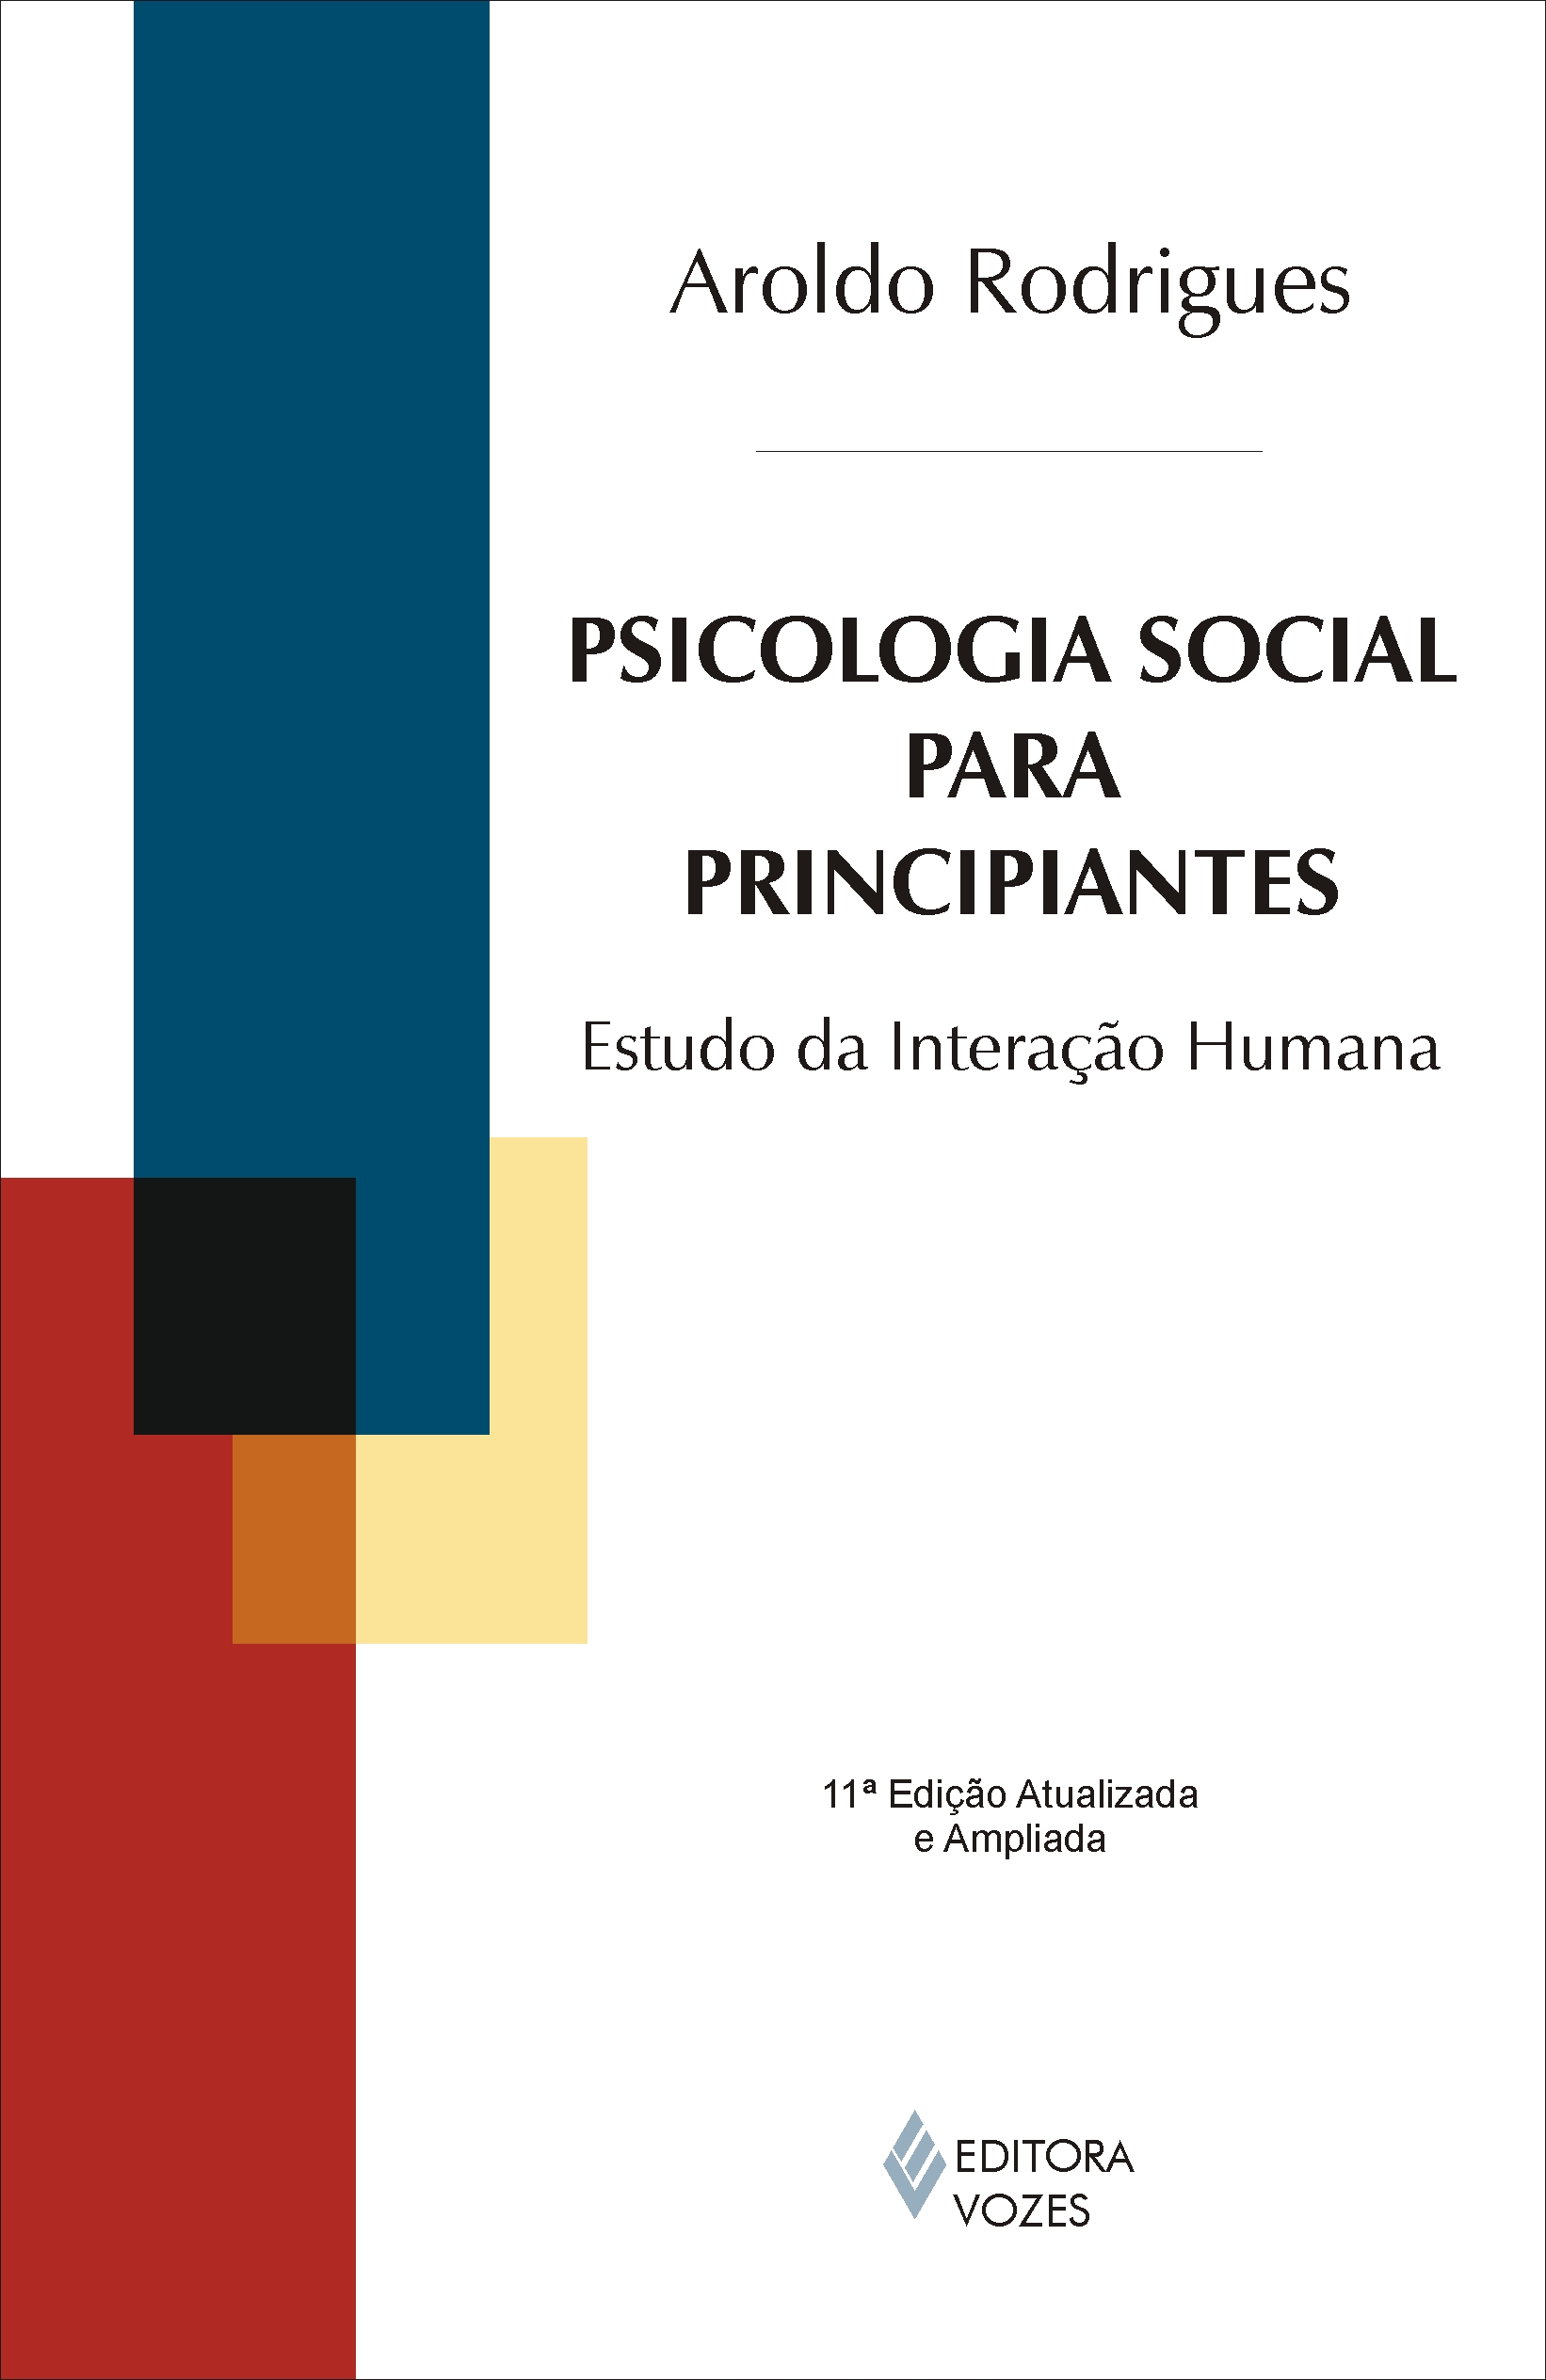 Psicologia Social para Principiantes - Estudo da Interação Humana